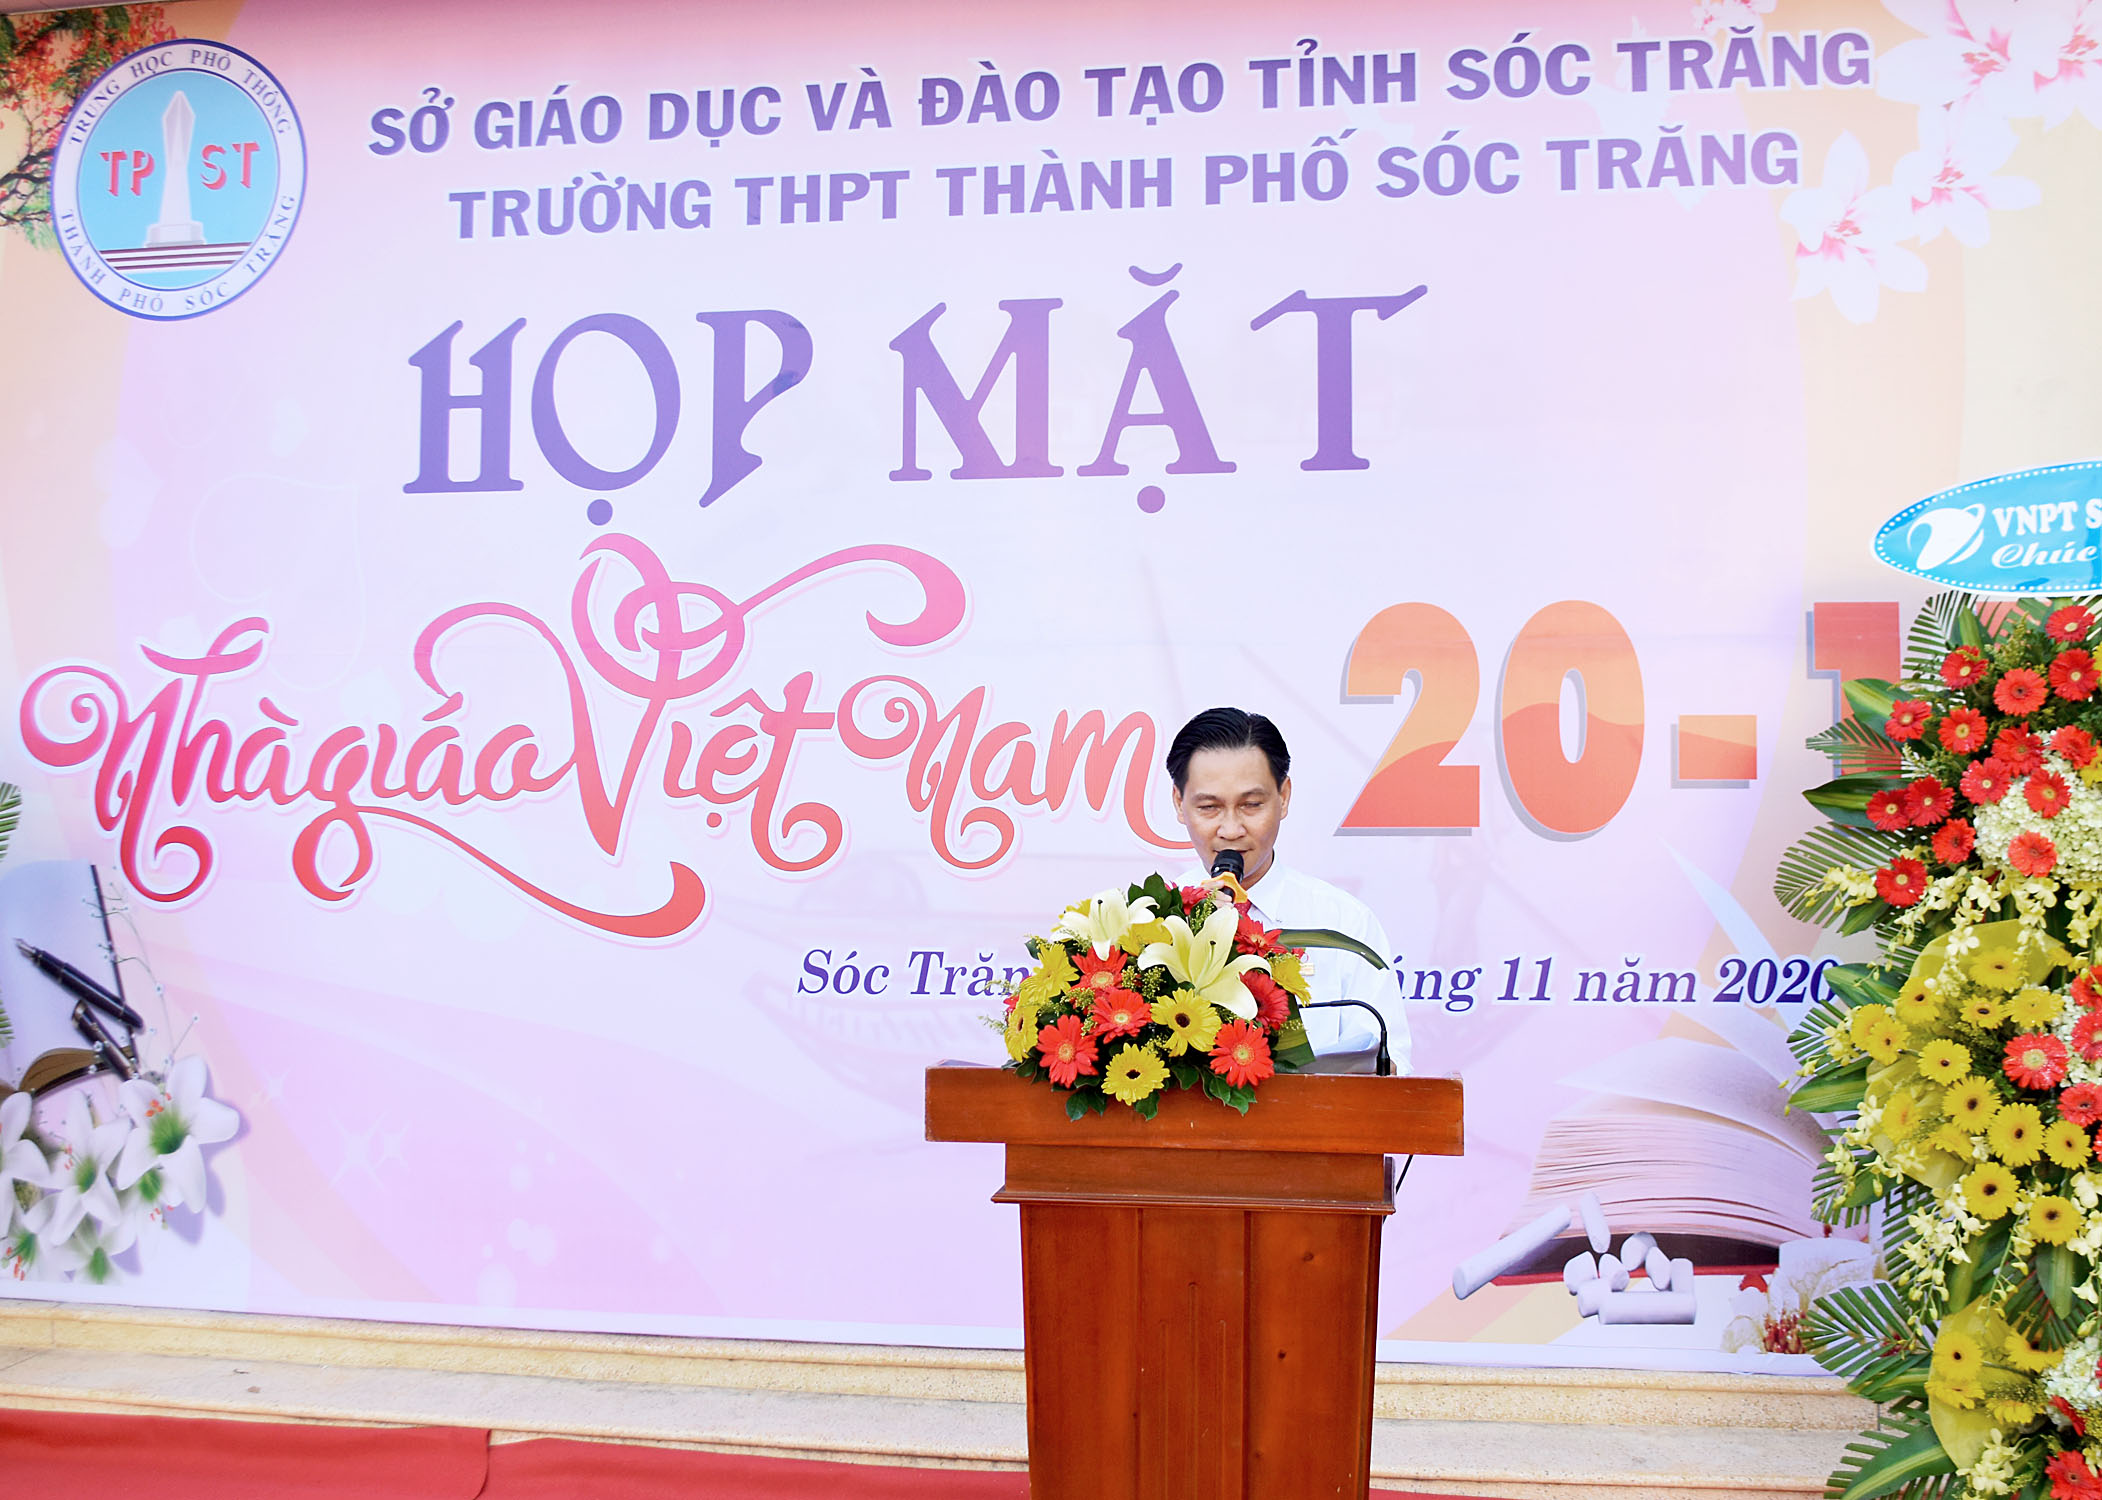 Trường THPT Thành Phố Sóc Trăng tổ chức  họp mặt kỉ niệm 20/11